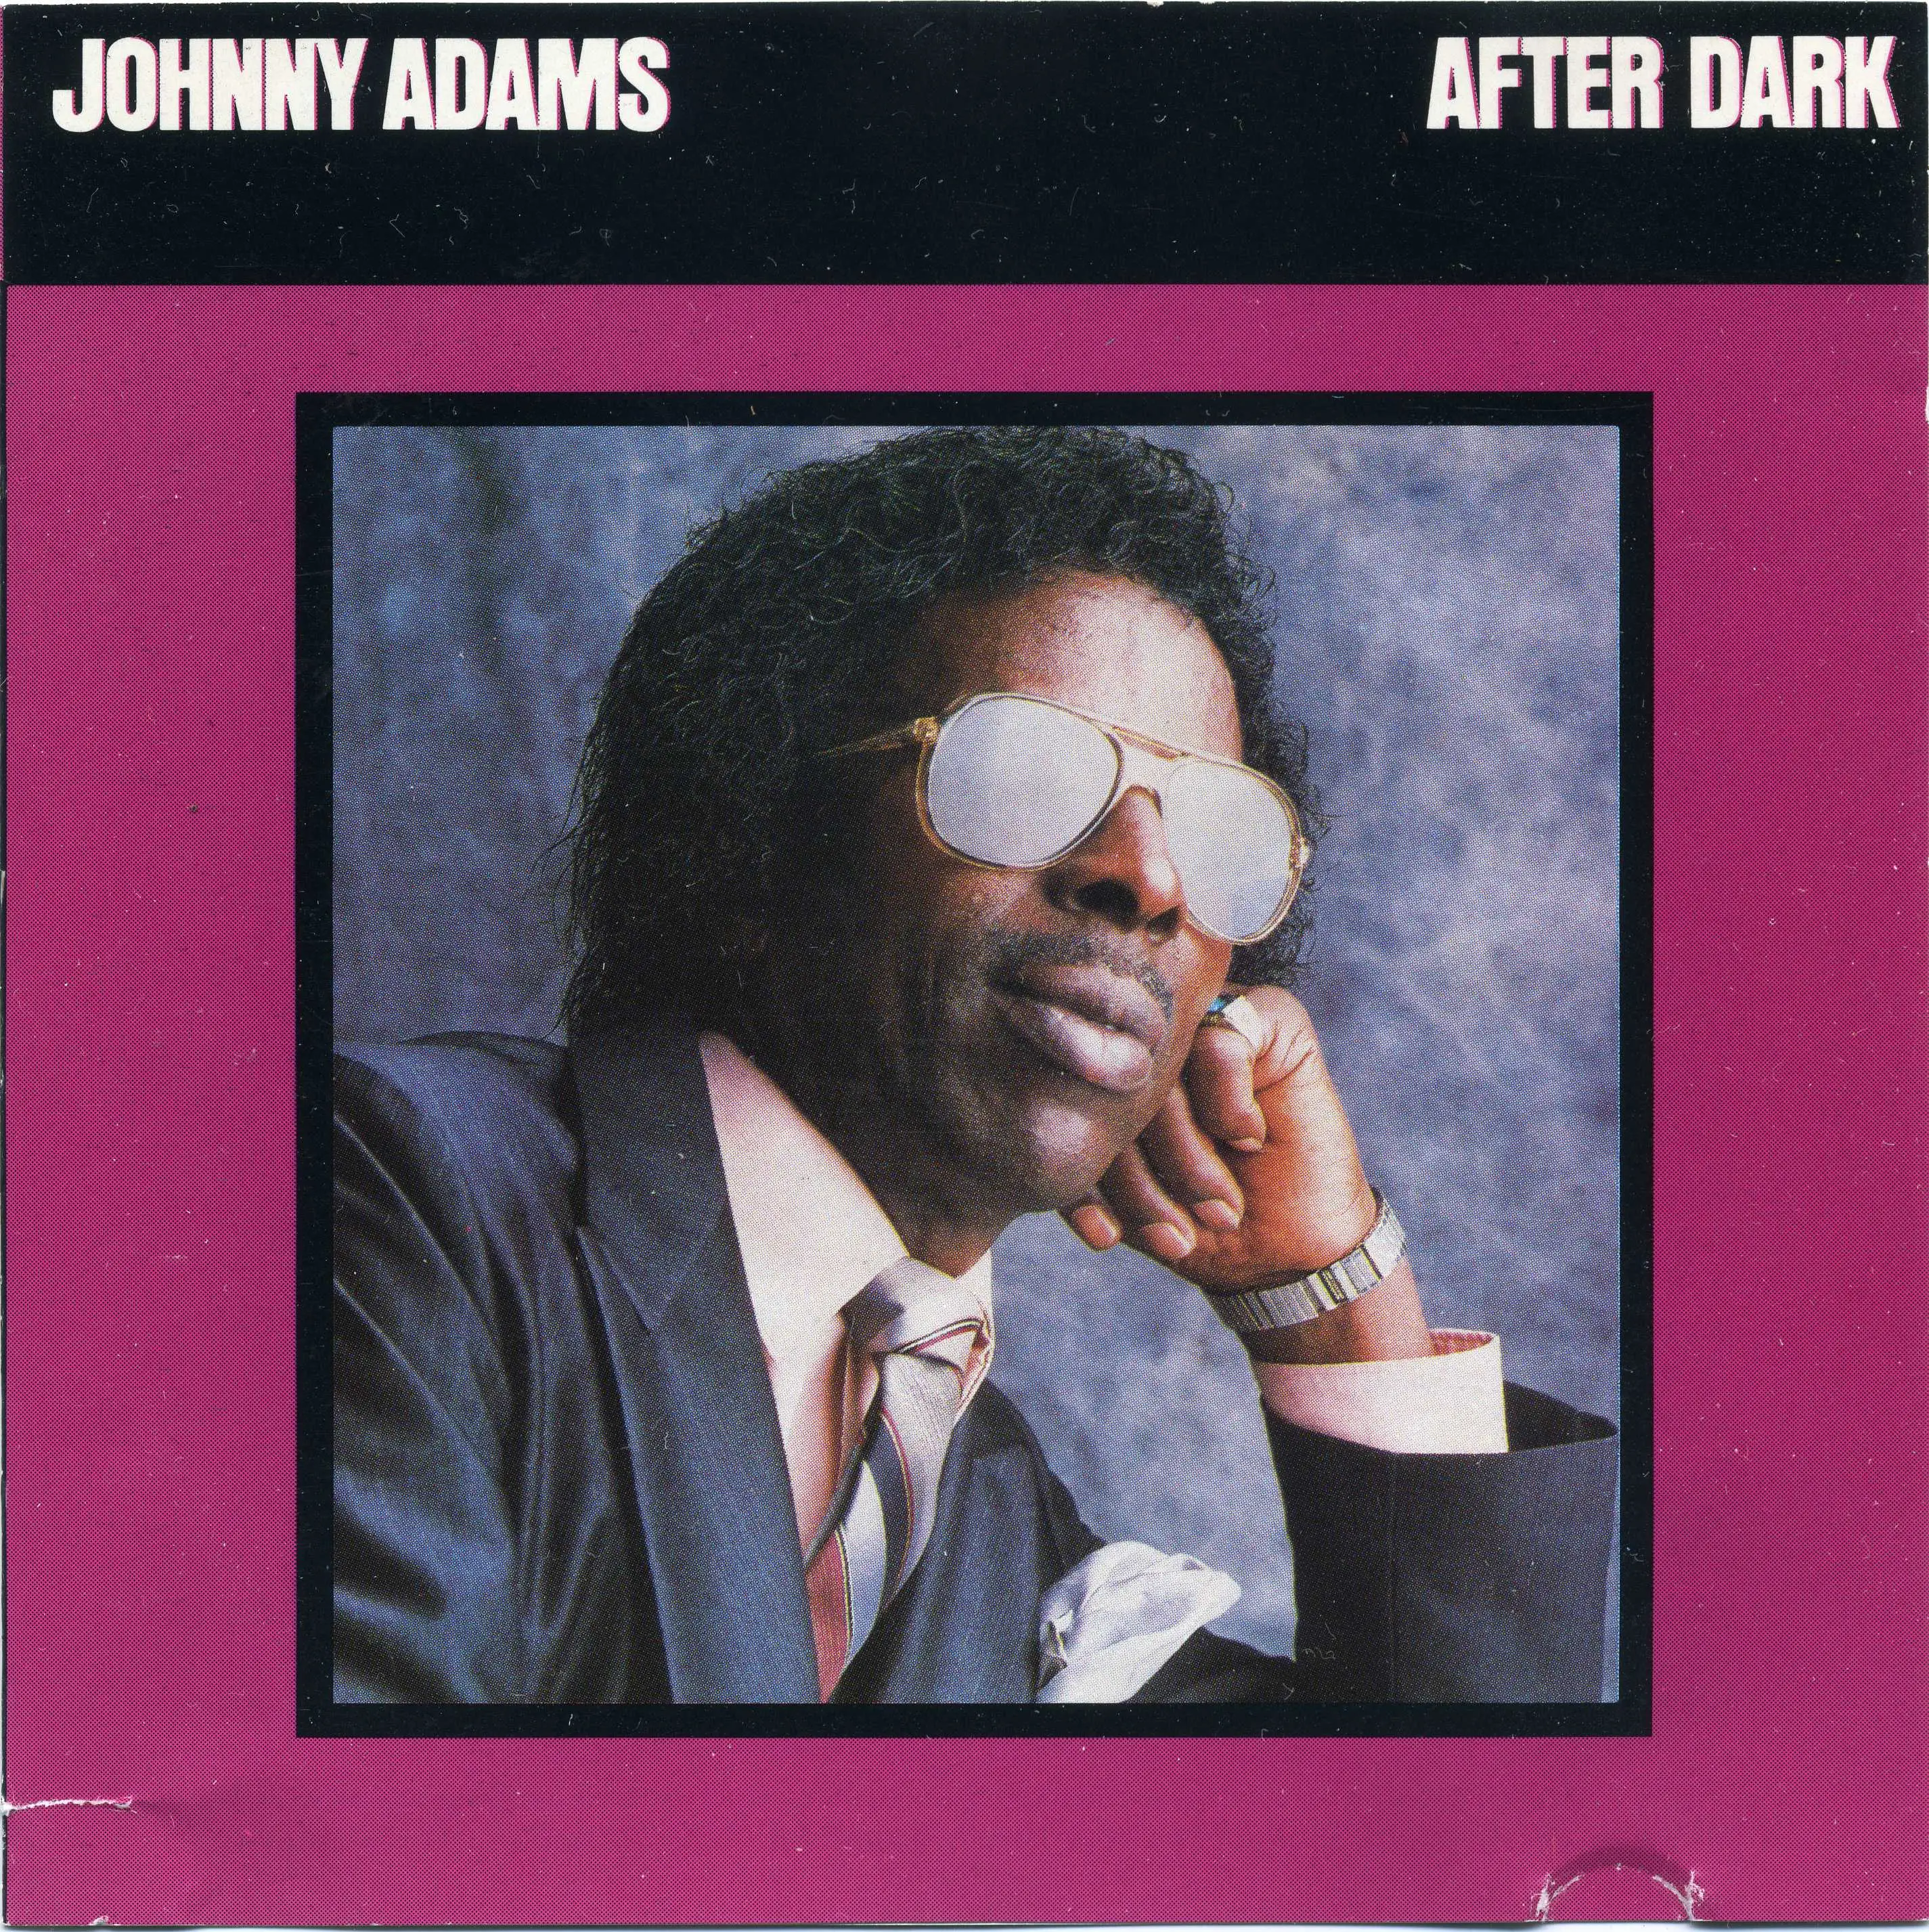 Адамс плиз. Joni Adams. Джонни альбом. Bryan Adams альбомы. Исполнитель песни after Dark.